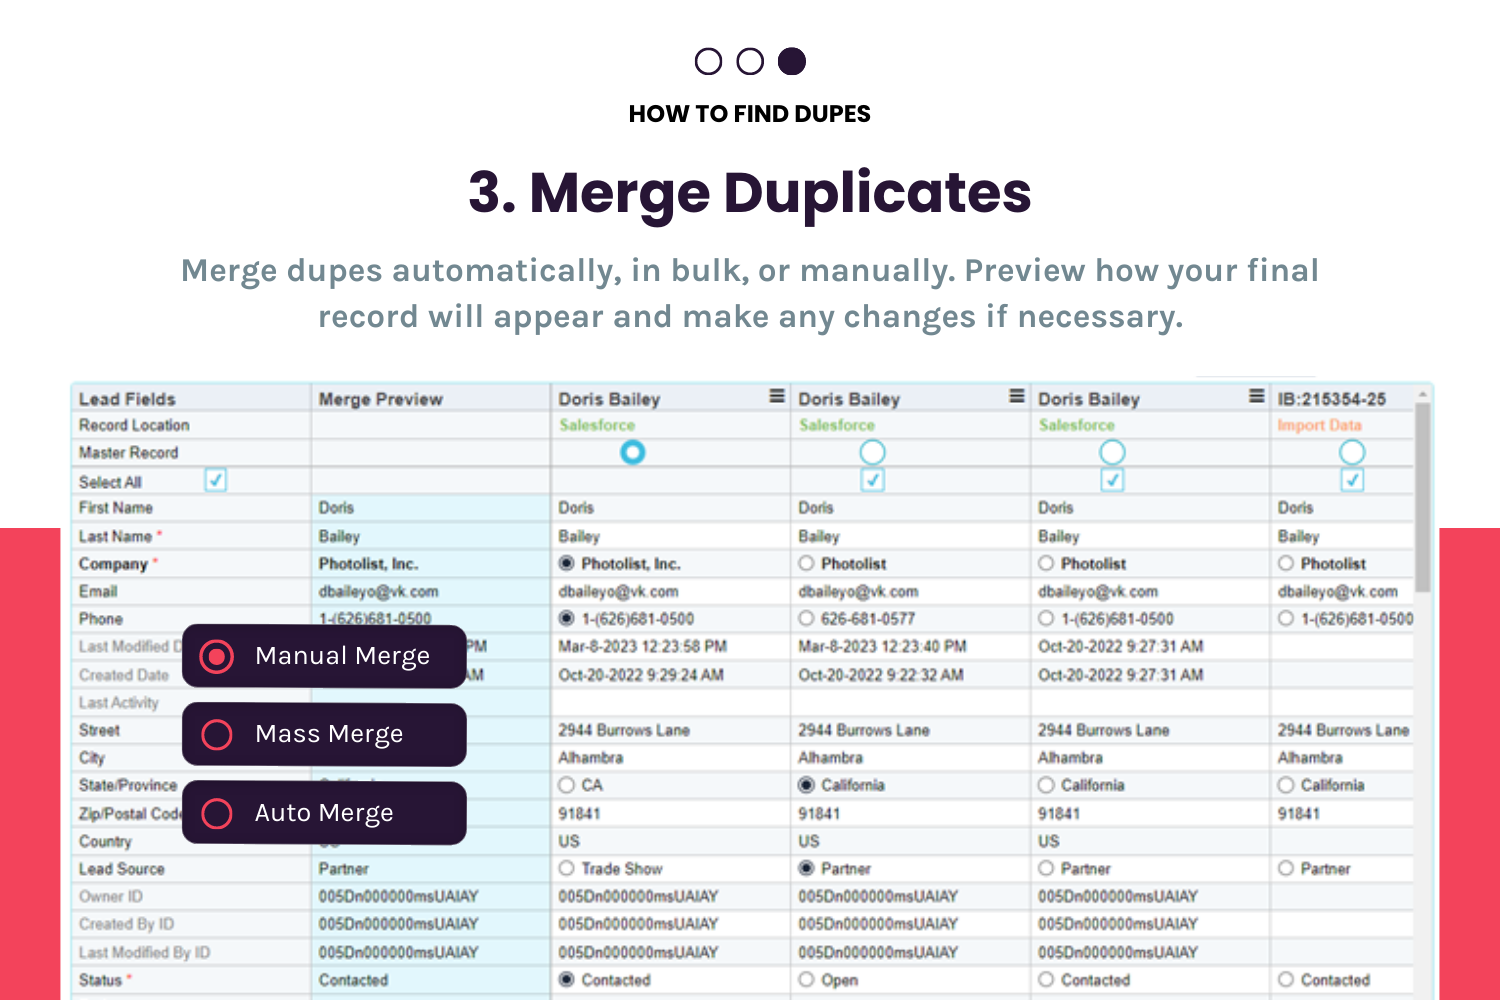 Step 3 to Deduping: Merge Duplicates